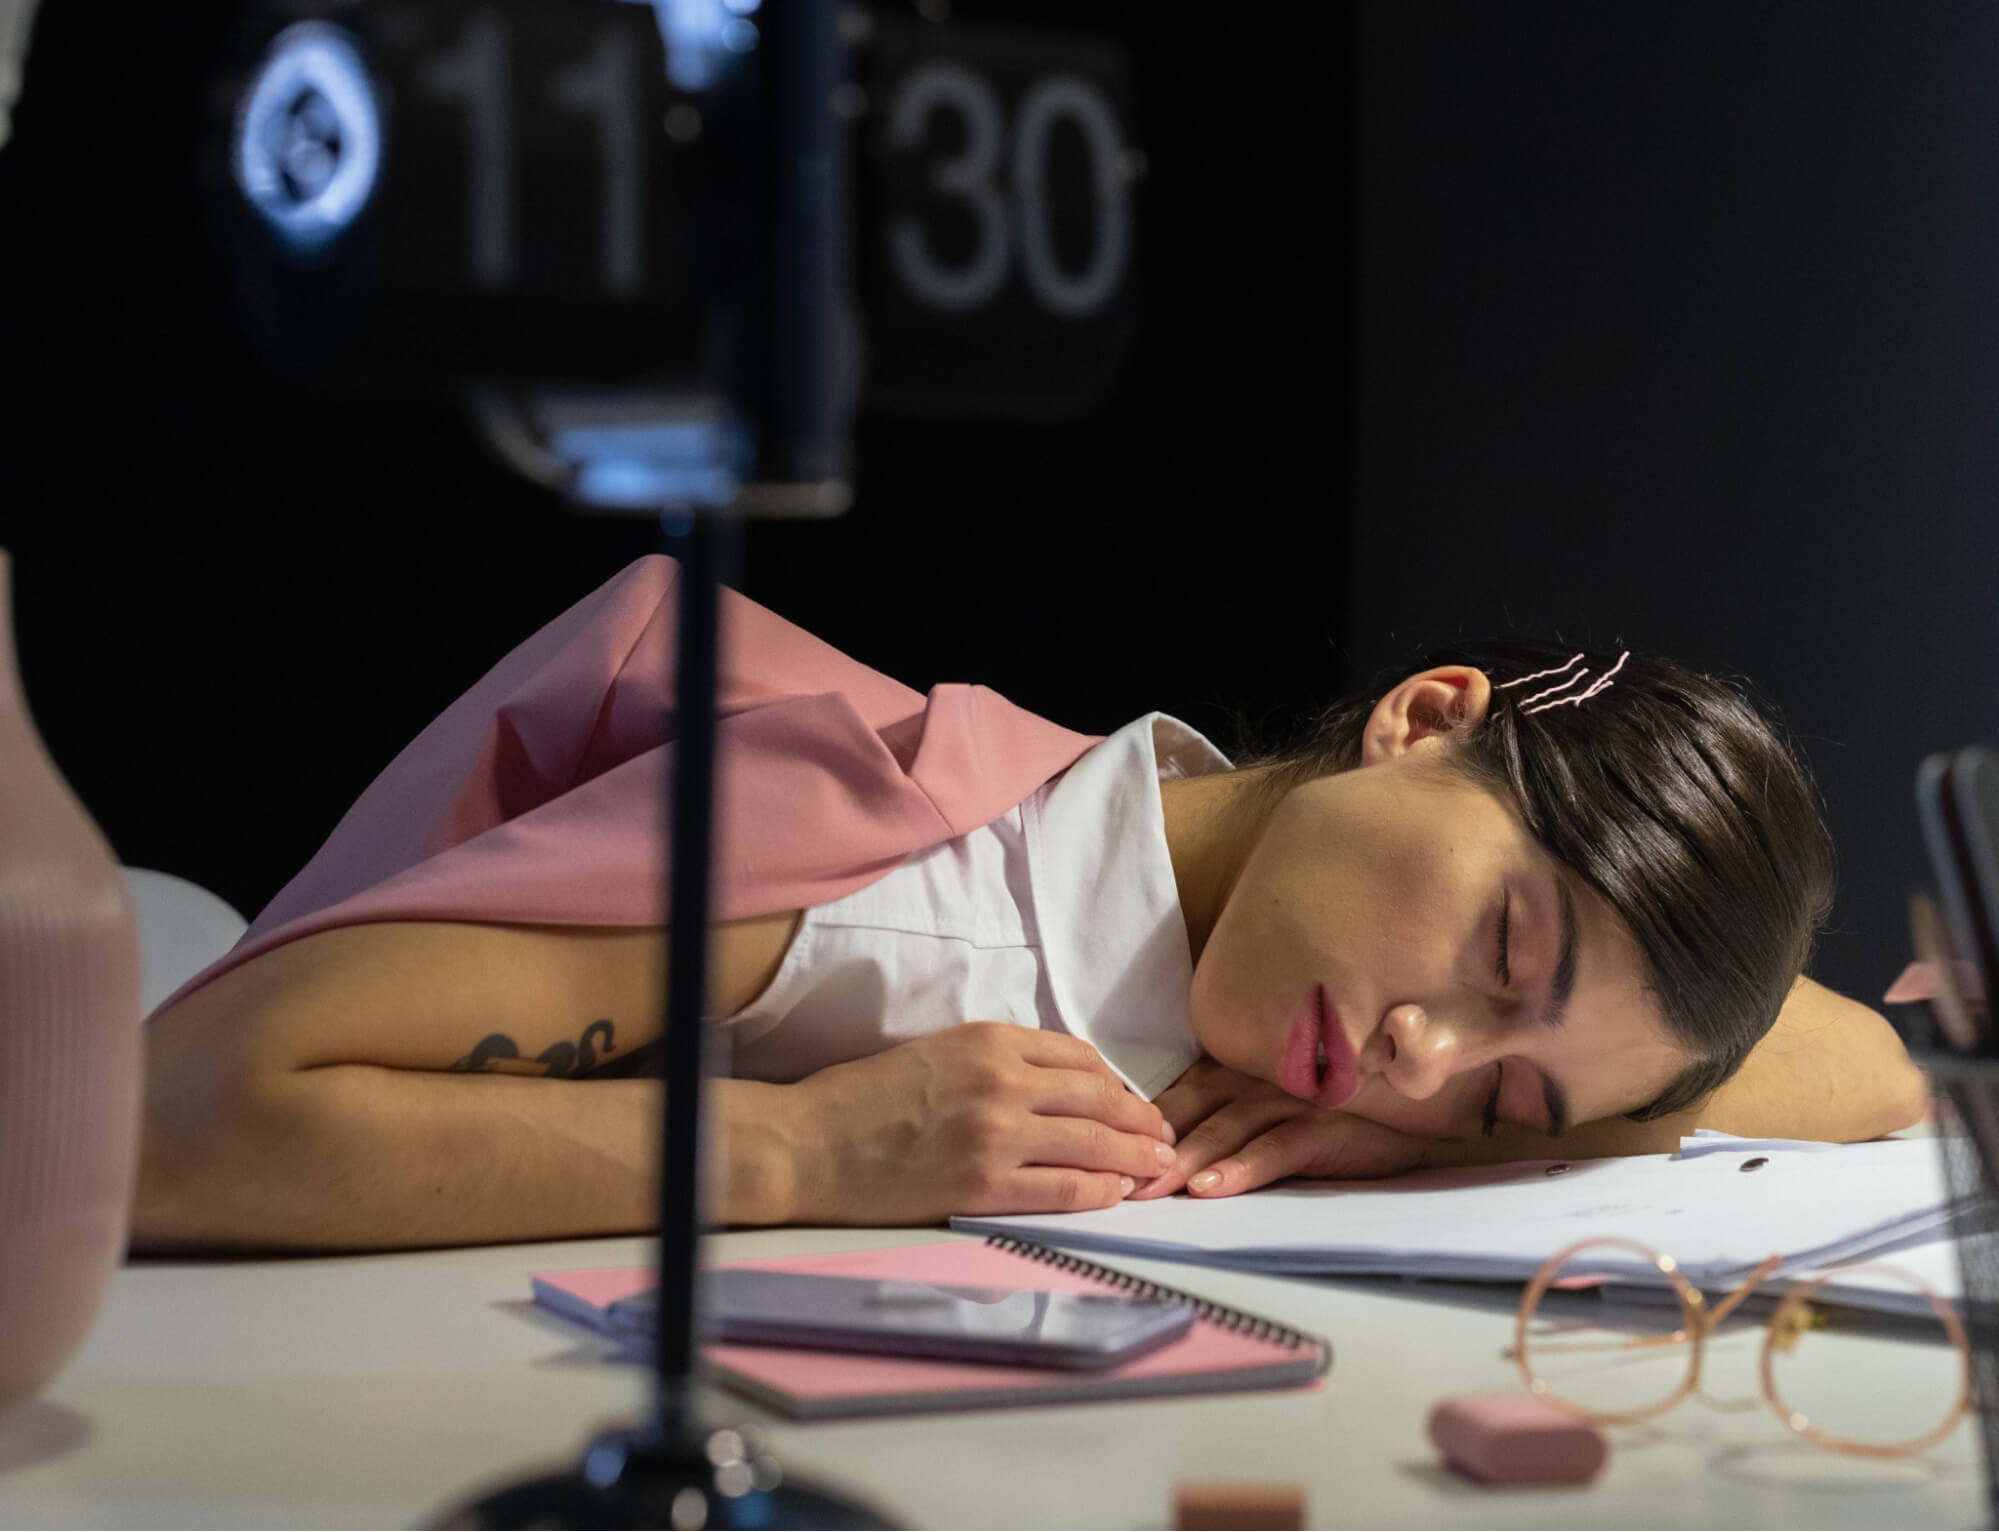 Làm việc theo ca có thể làm gián đoạn giấc ngủ và dẫn đến tình trạng kiệt sức